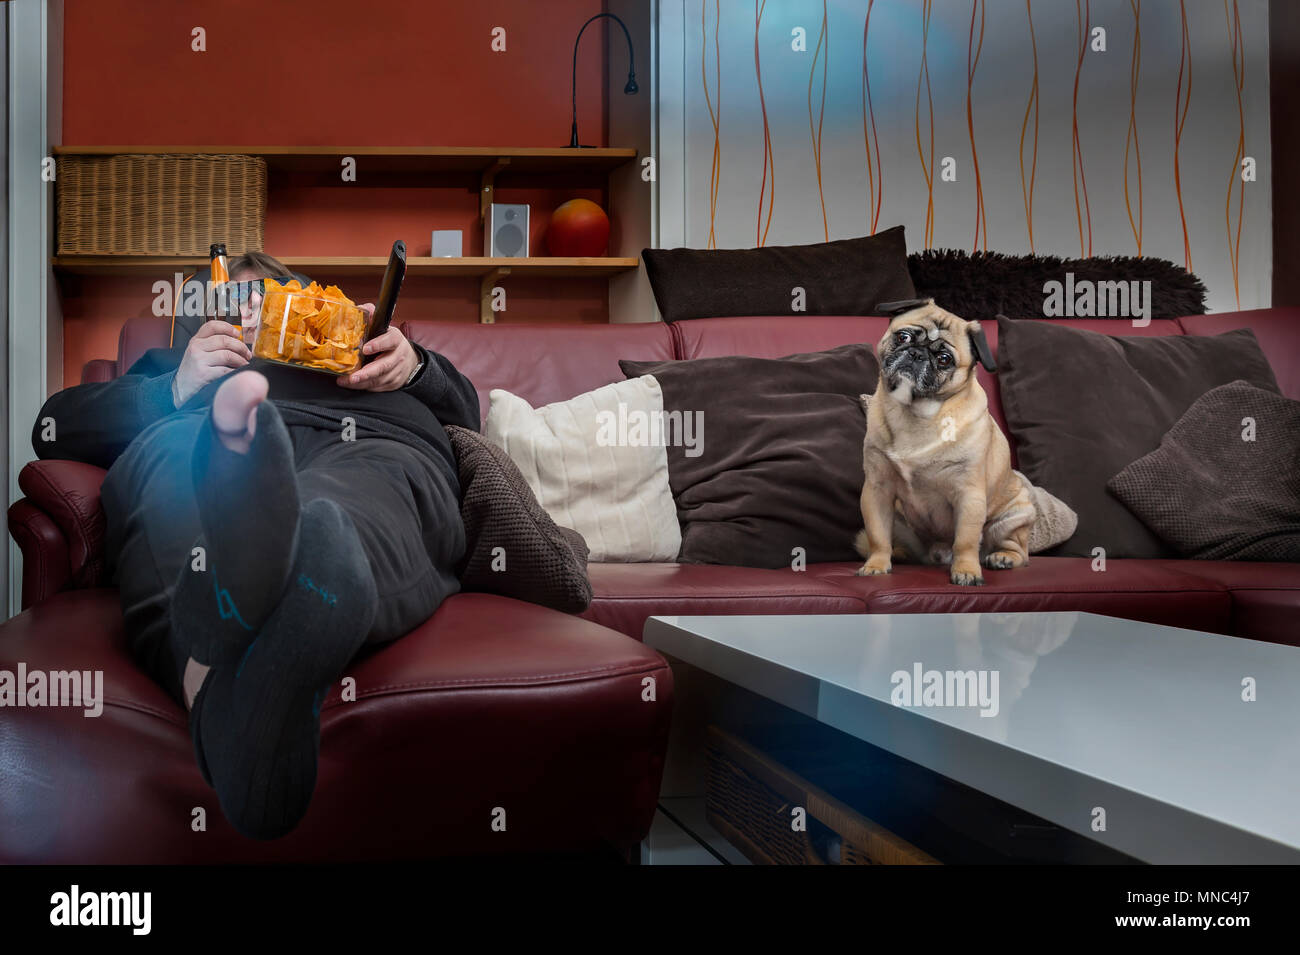 Ein Mensch isst Chips vor dem Fernseher. Sein Hund sitzt neben ihm auf der Couch. Der Mann hat ein Loch in die Strümpfe und eine 3D-Brille auf. Frosch p Stockfoto